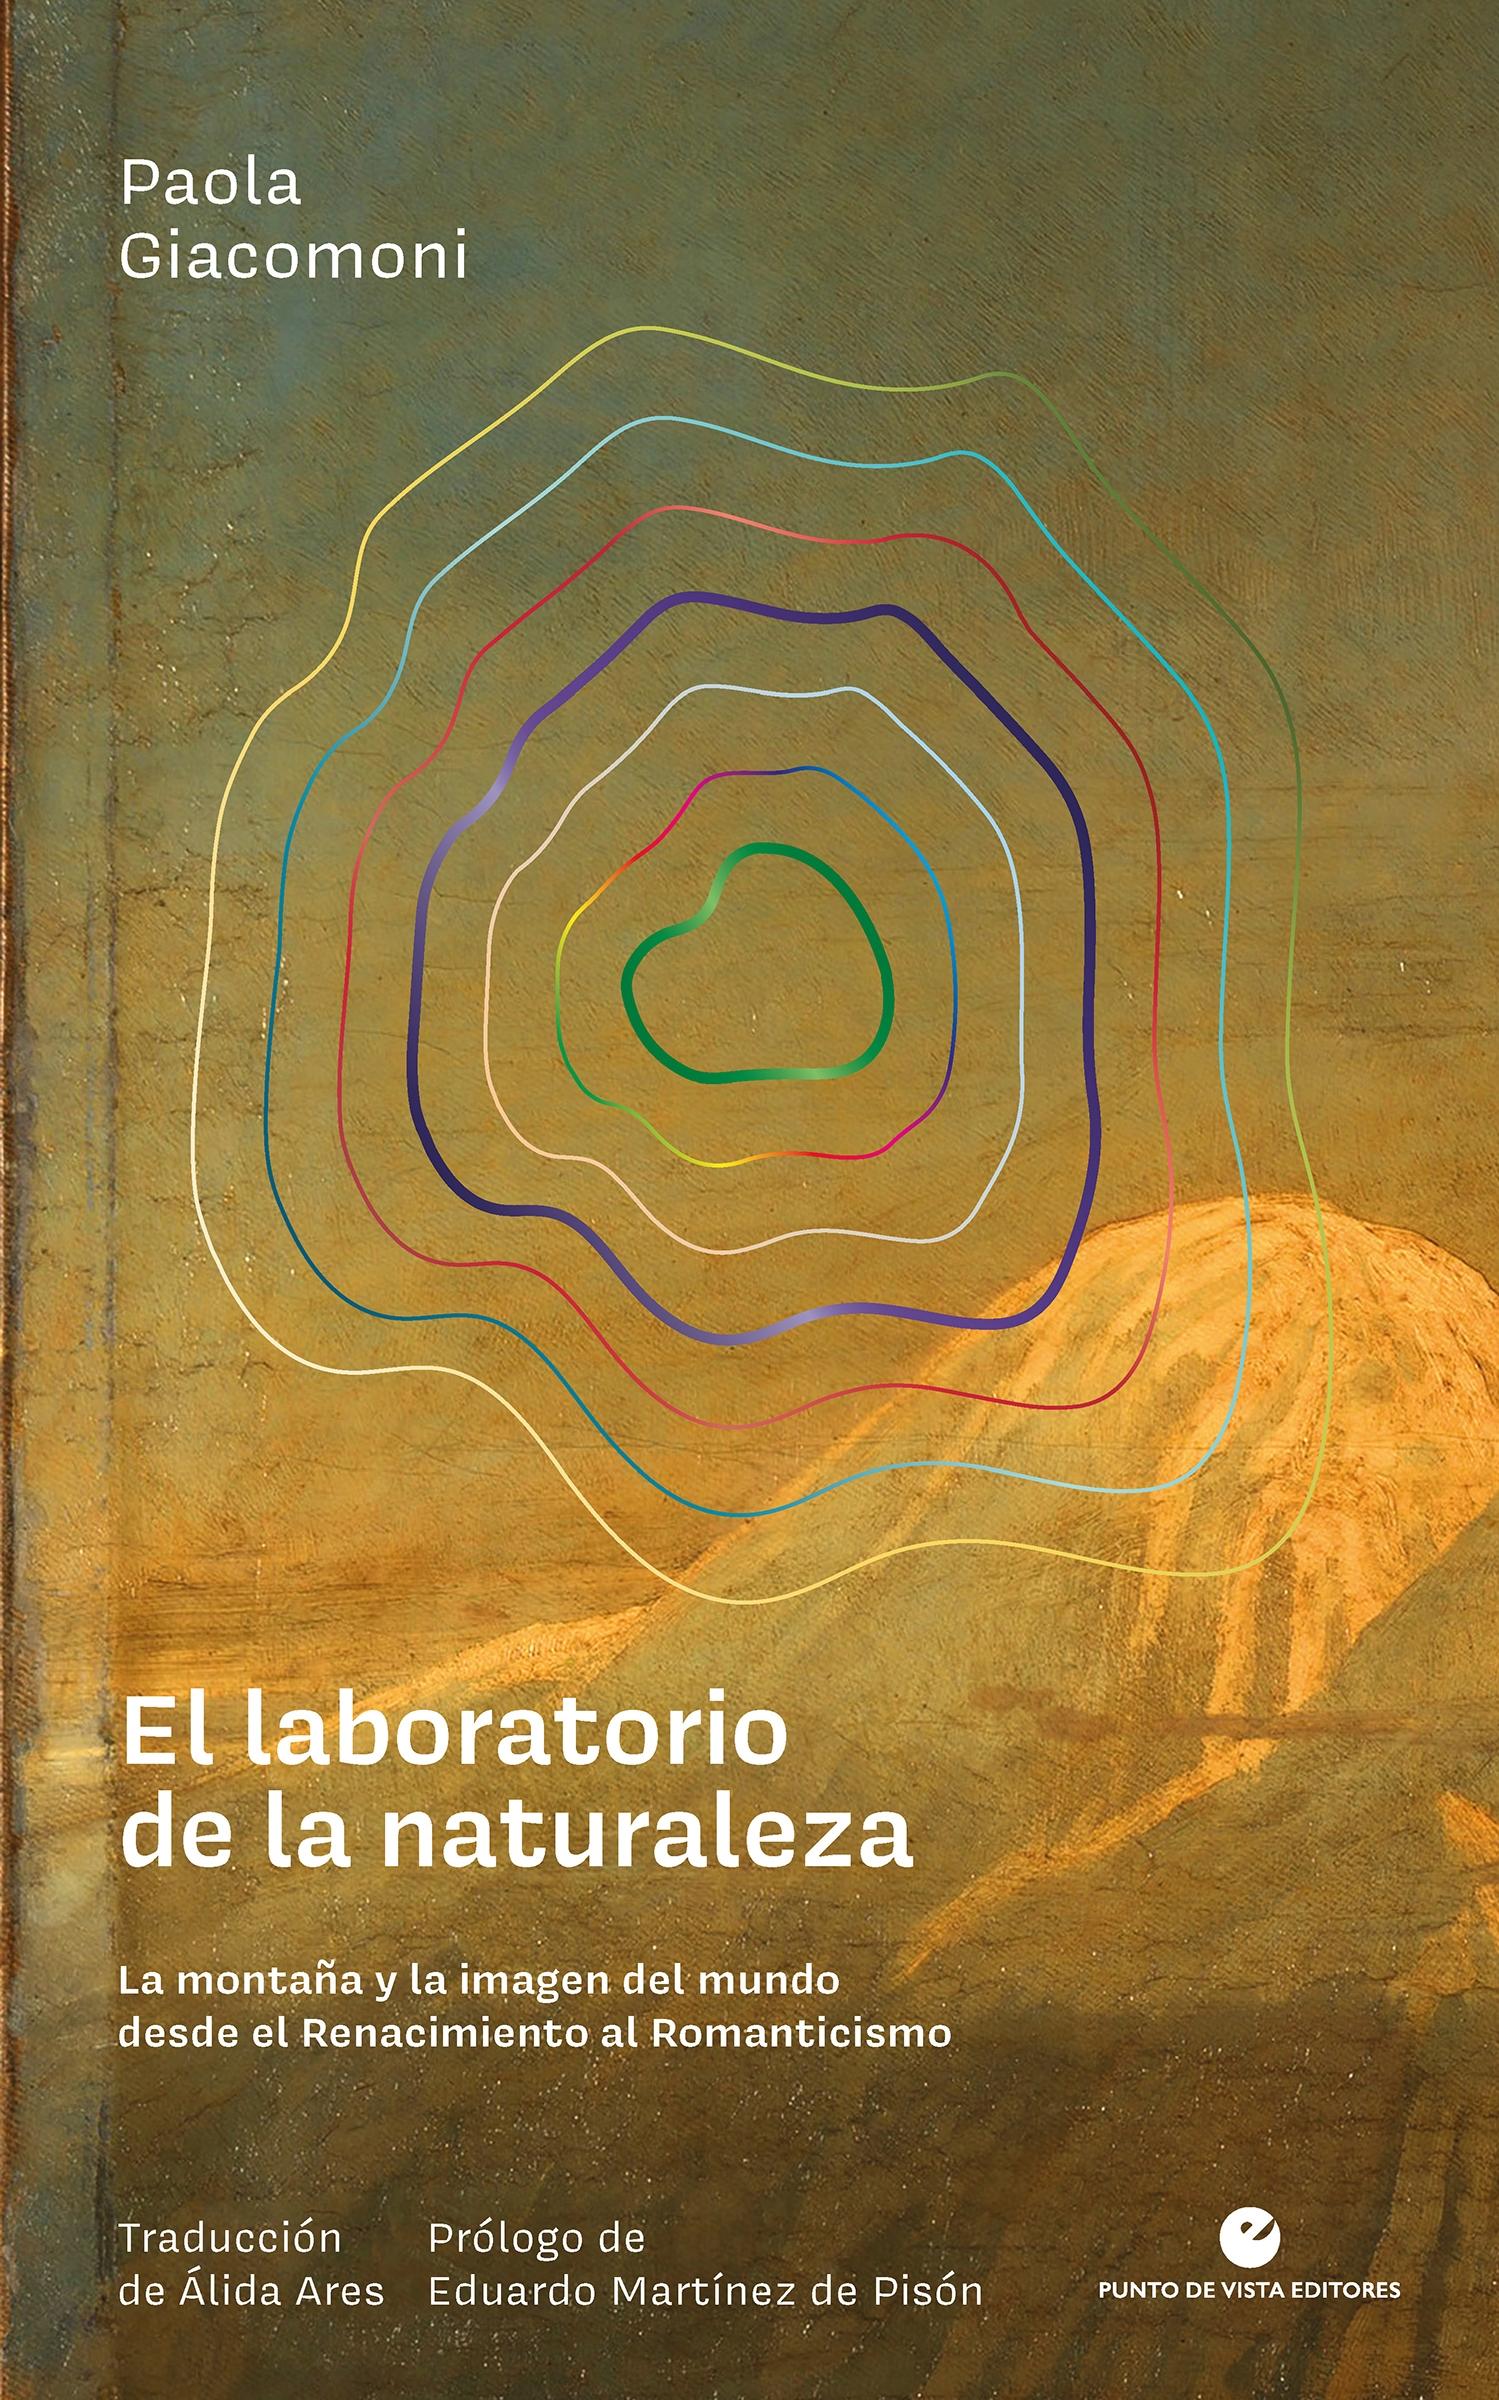 El Laboratorio de la Naturaleza "La montaña y la imagen del mundo desde el Renacimiento al Romanticismo"